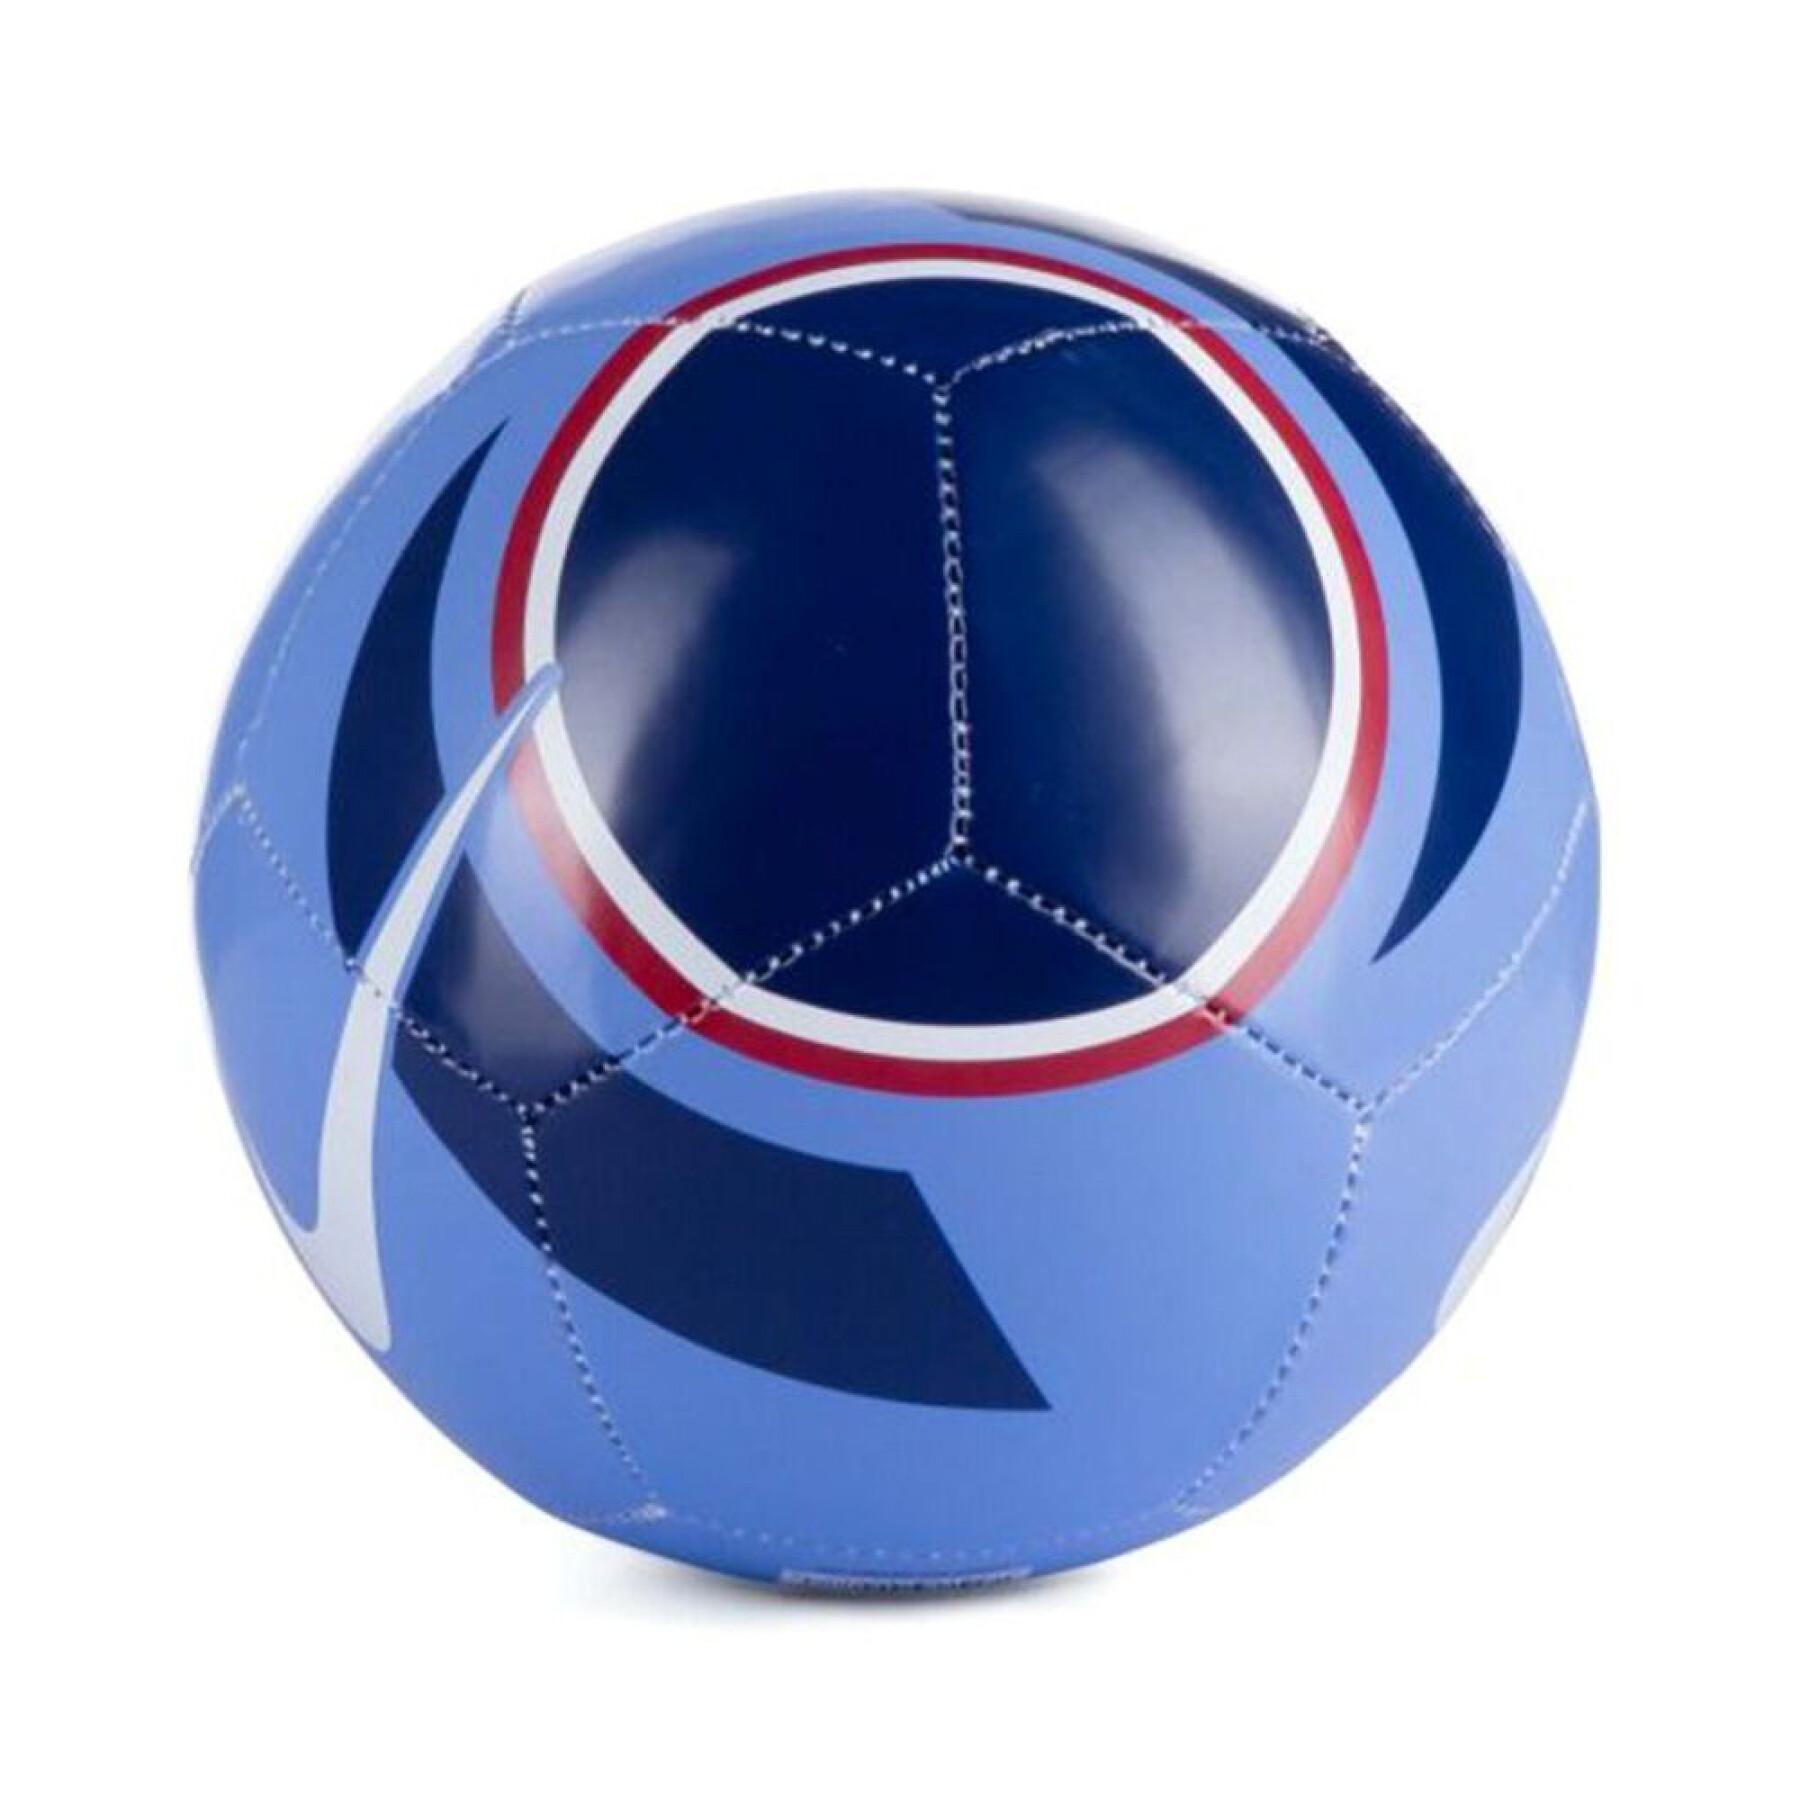 Bola do Campeonato do Mundo de Futebol Feminino de 2023 France Academy